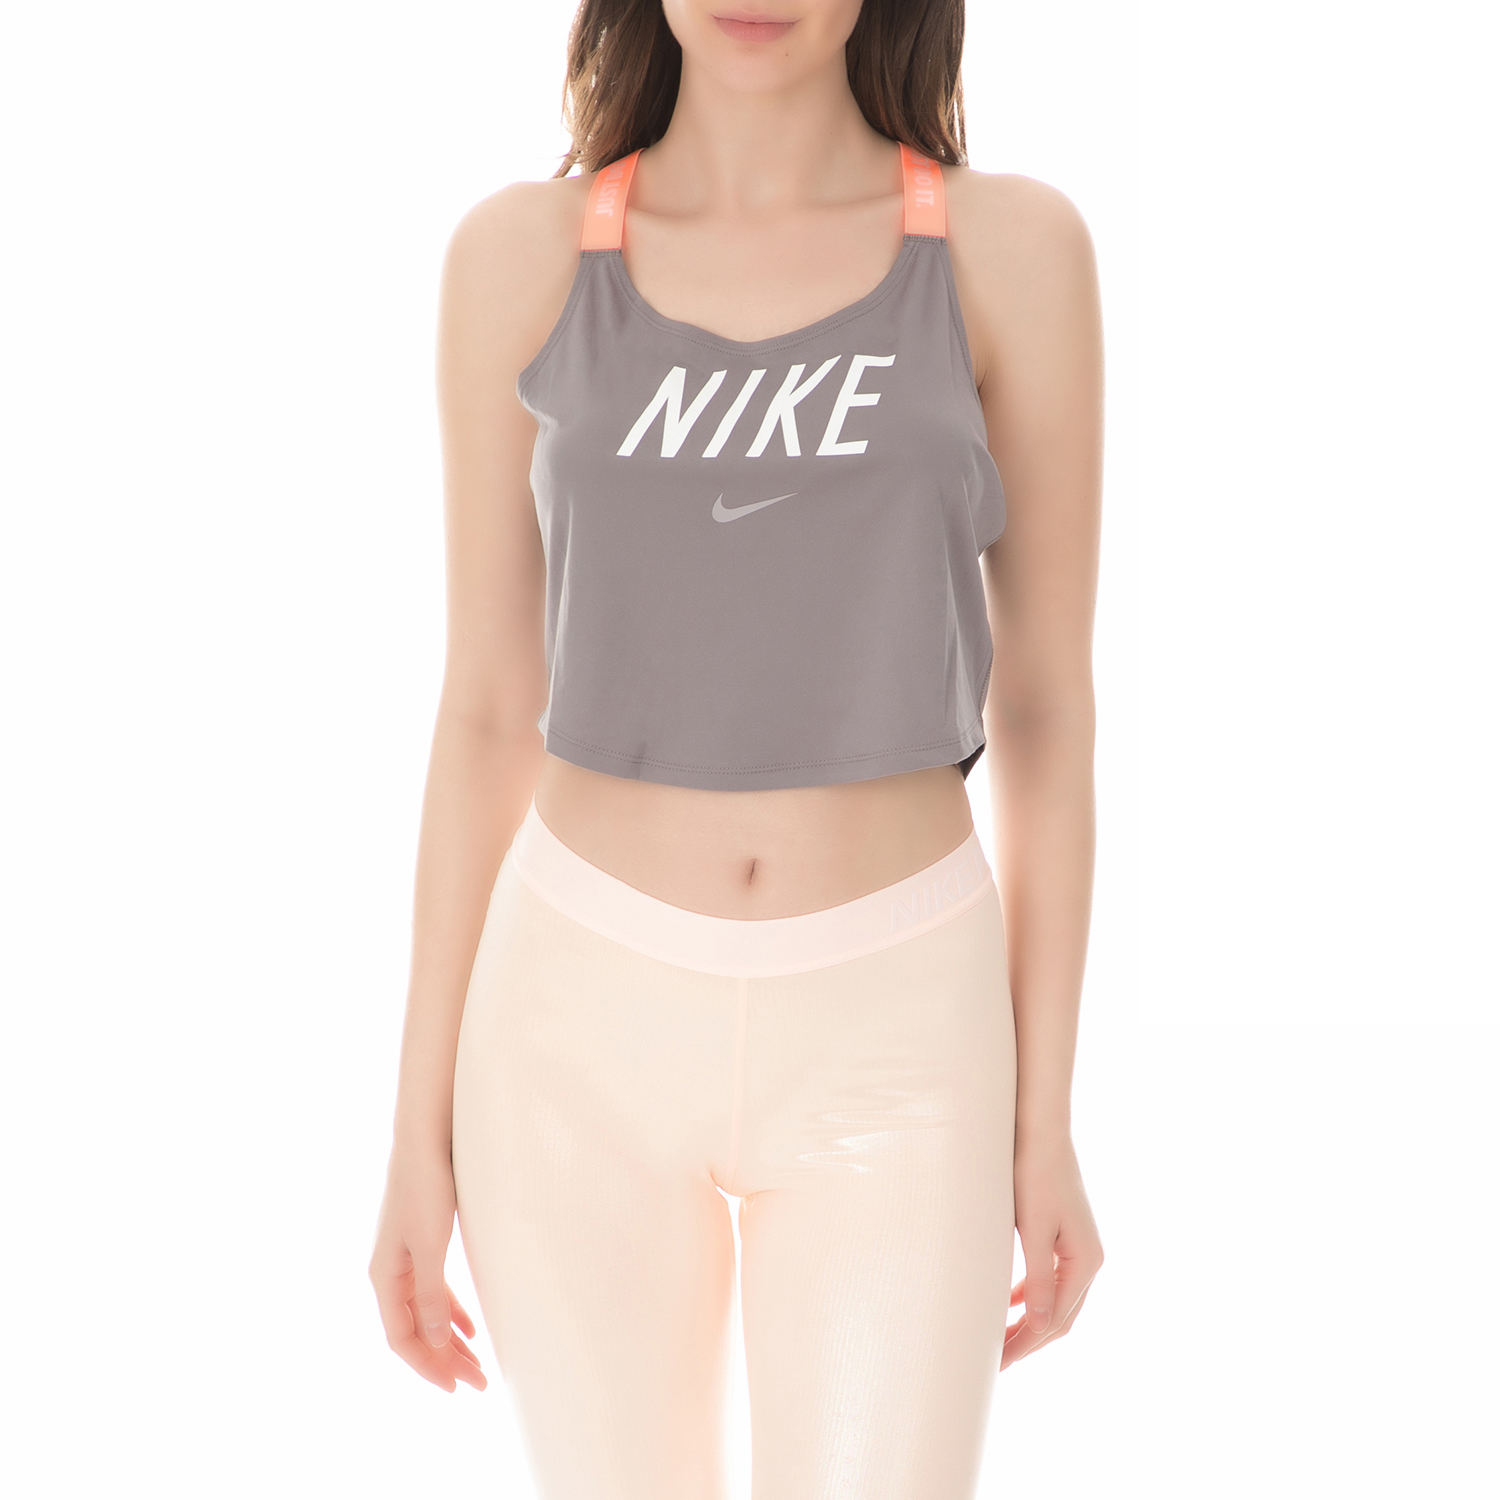 NIKE - Γυναικείο φανελάκι προπόνησης Nike Dri-FIT Elastika Training Tank γκρι Γυναικεία/Ρούχα/Αθλητικά/T-shirt-Τοπ